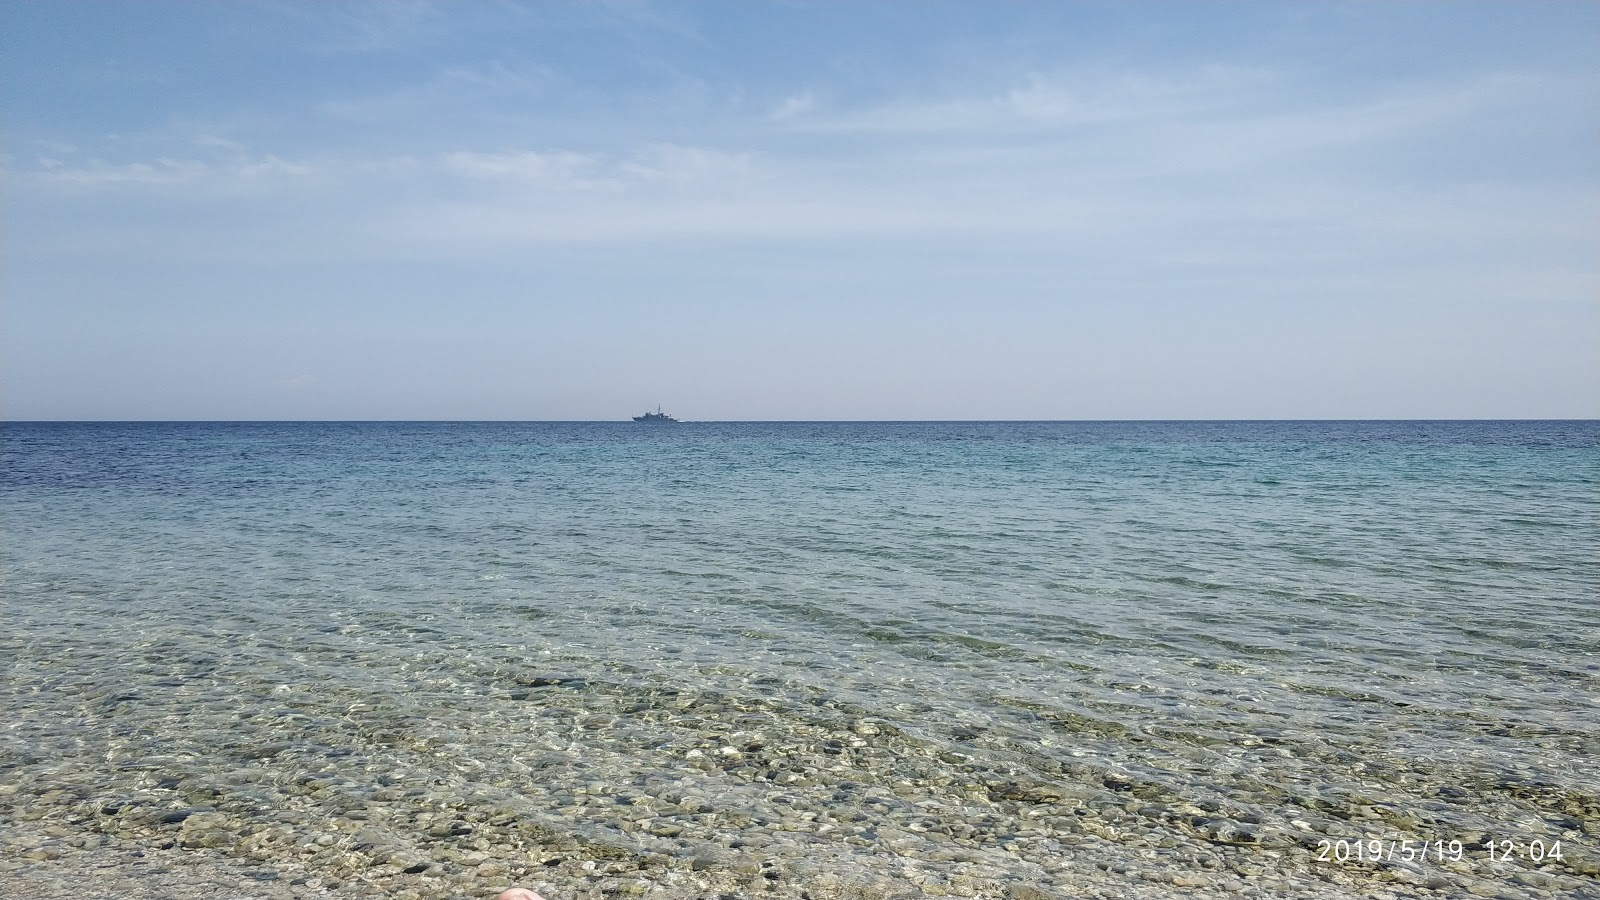 Akra Agrelios II'in fotoğrafı plaj tatil beldesi alanı